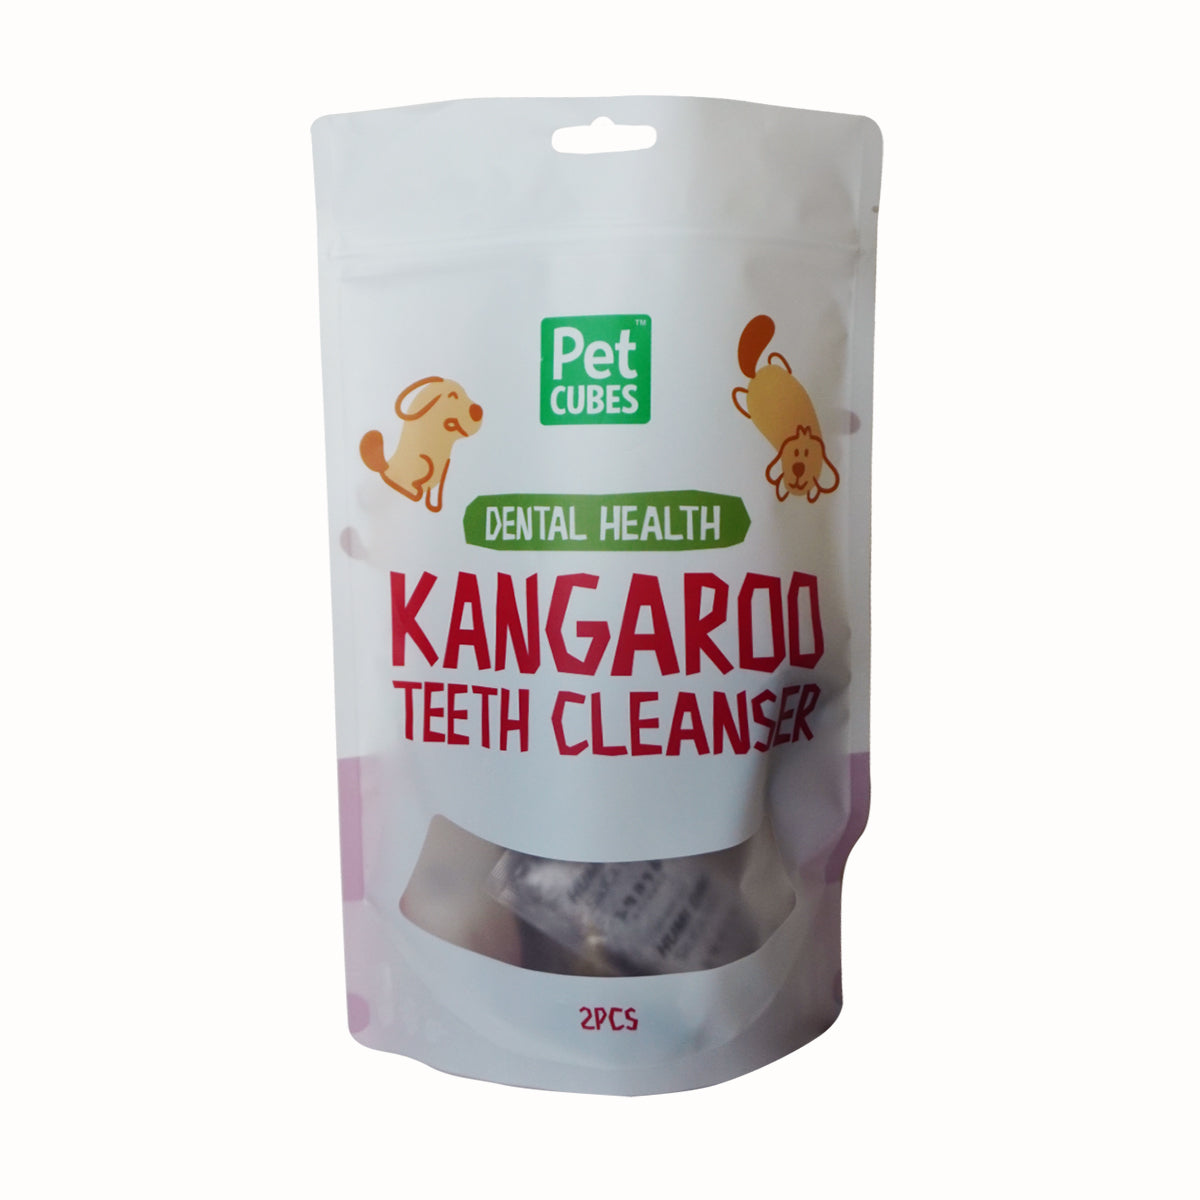 Kangaroo Teeth Cleanser